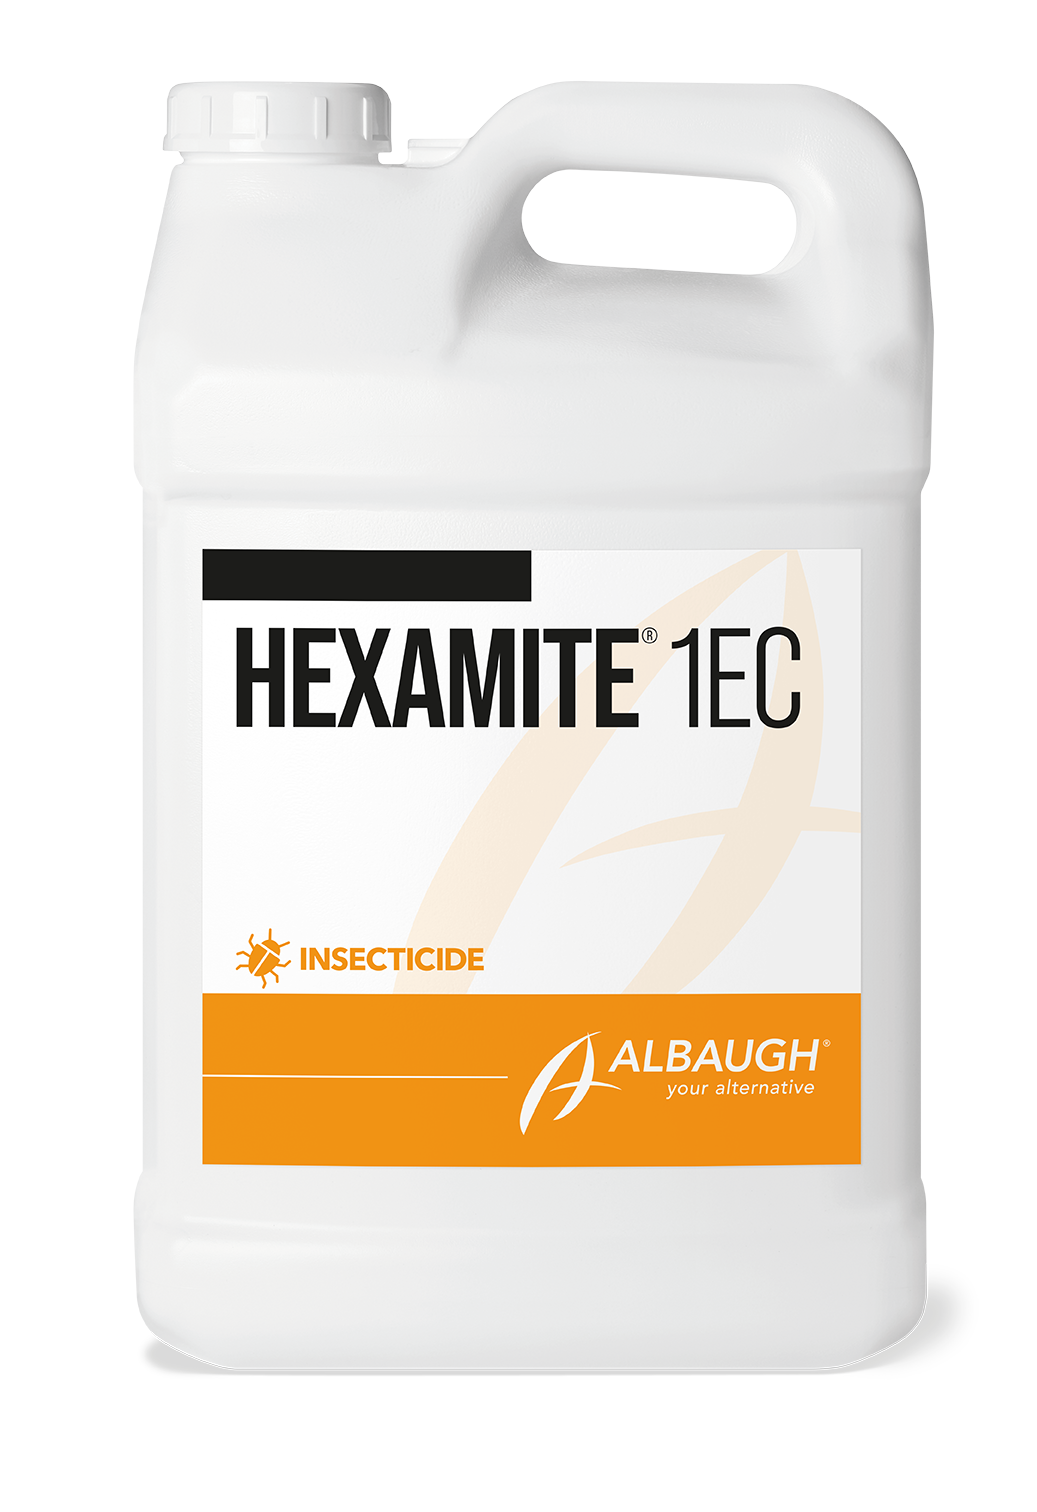 Hexamite® 1EC